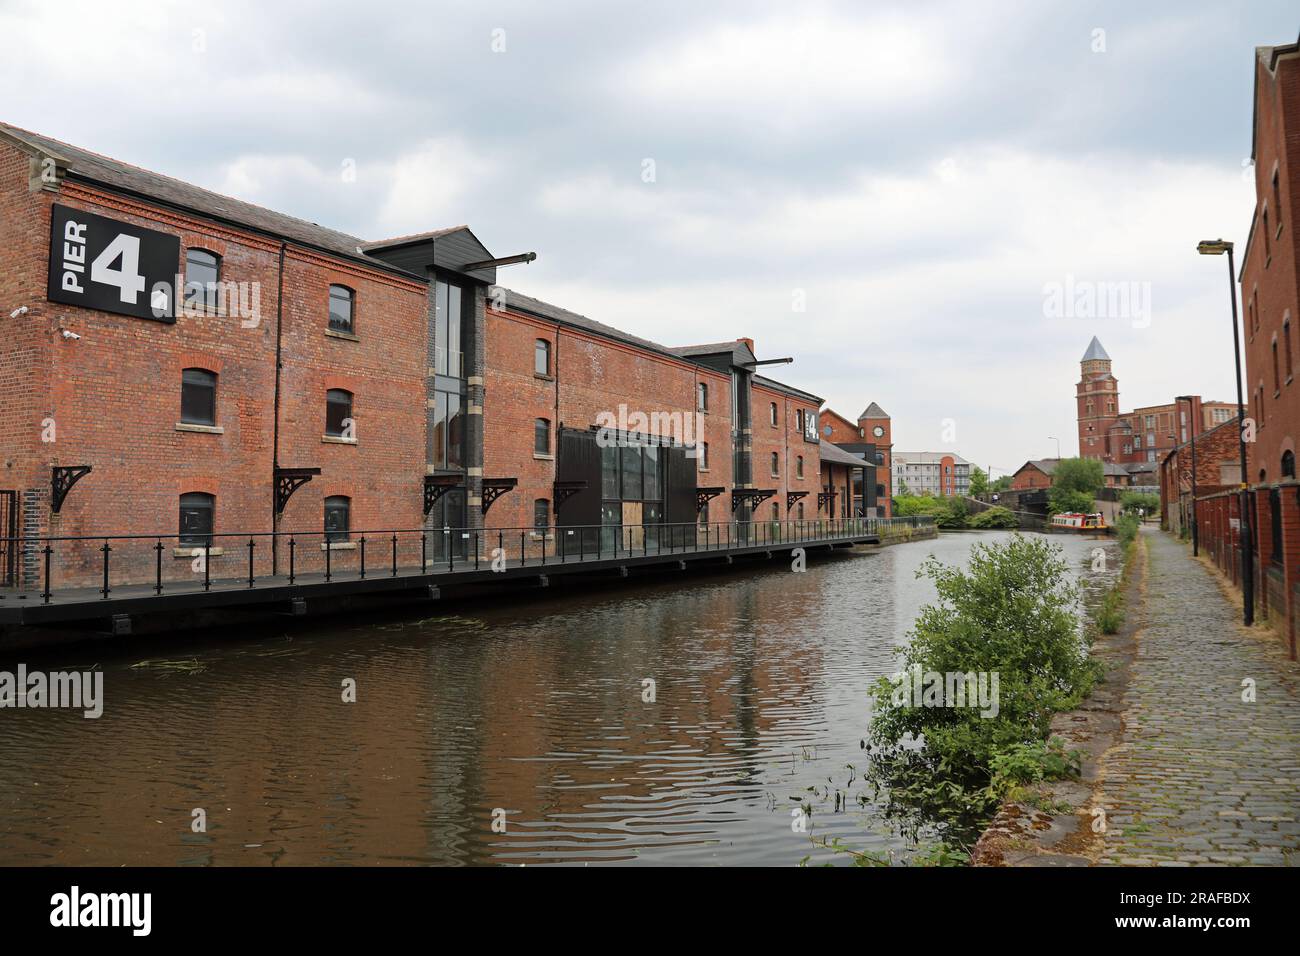 Le canal de Leeds et Liverpool à Wigan Pier Banque D'Images